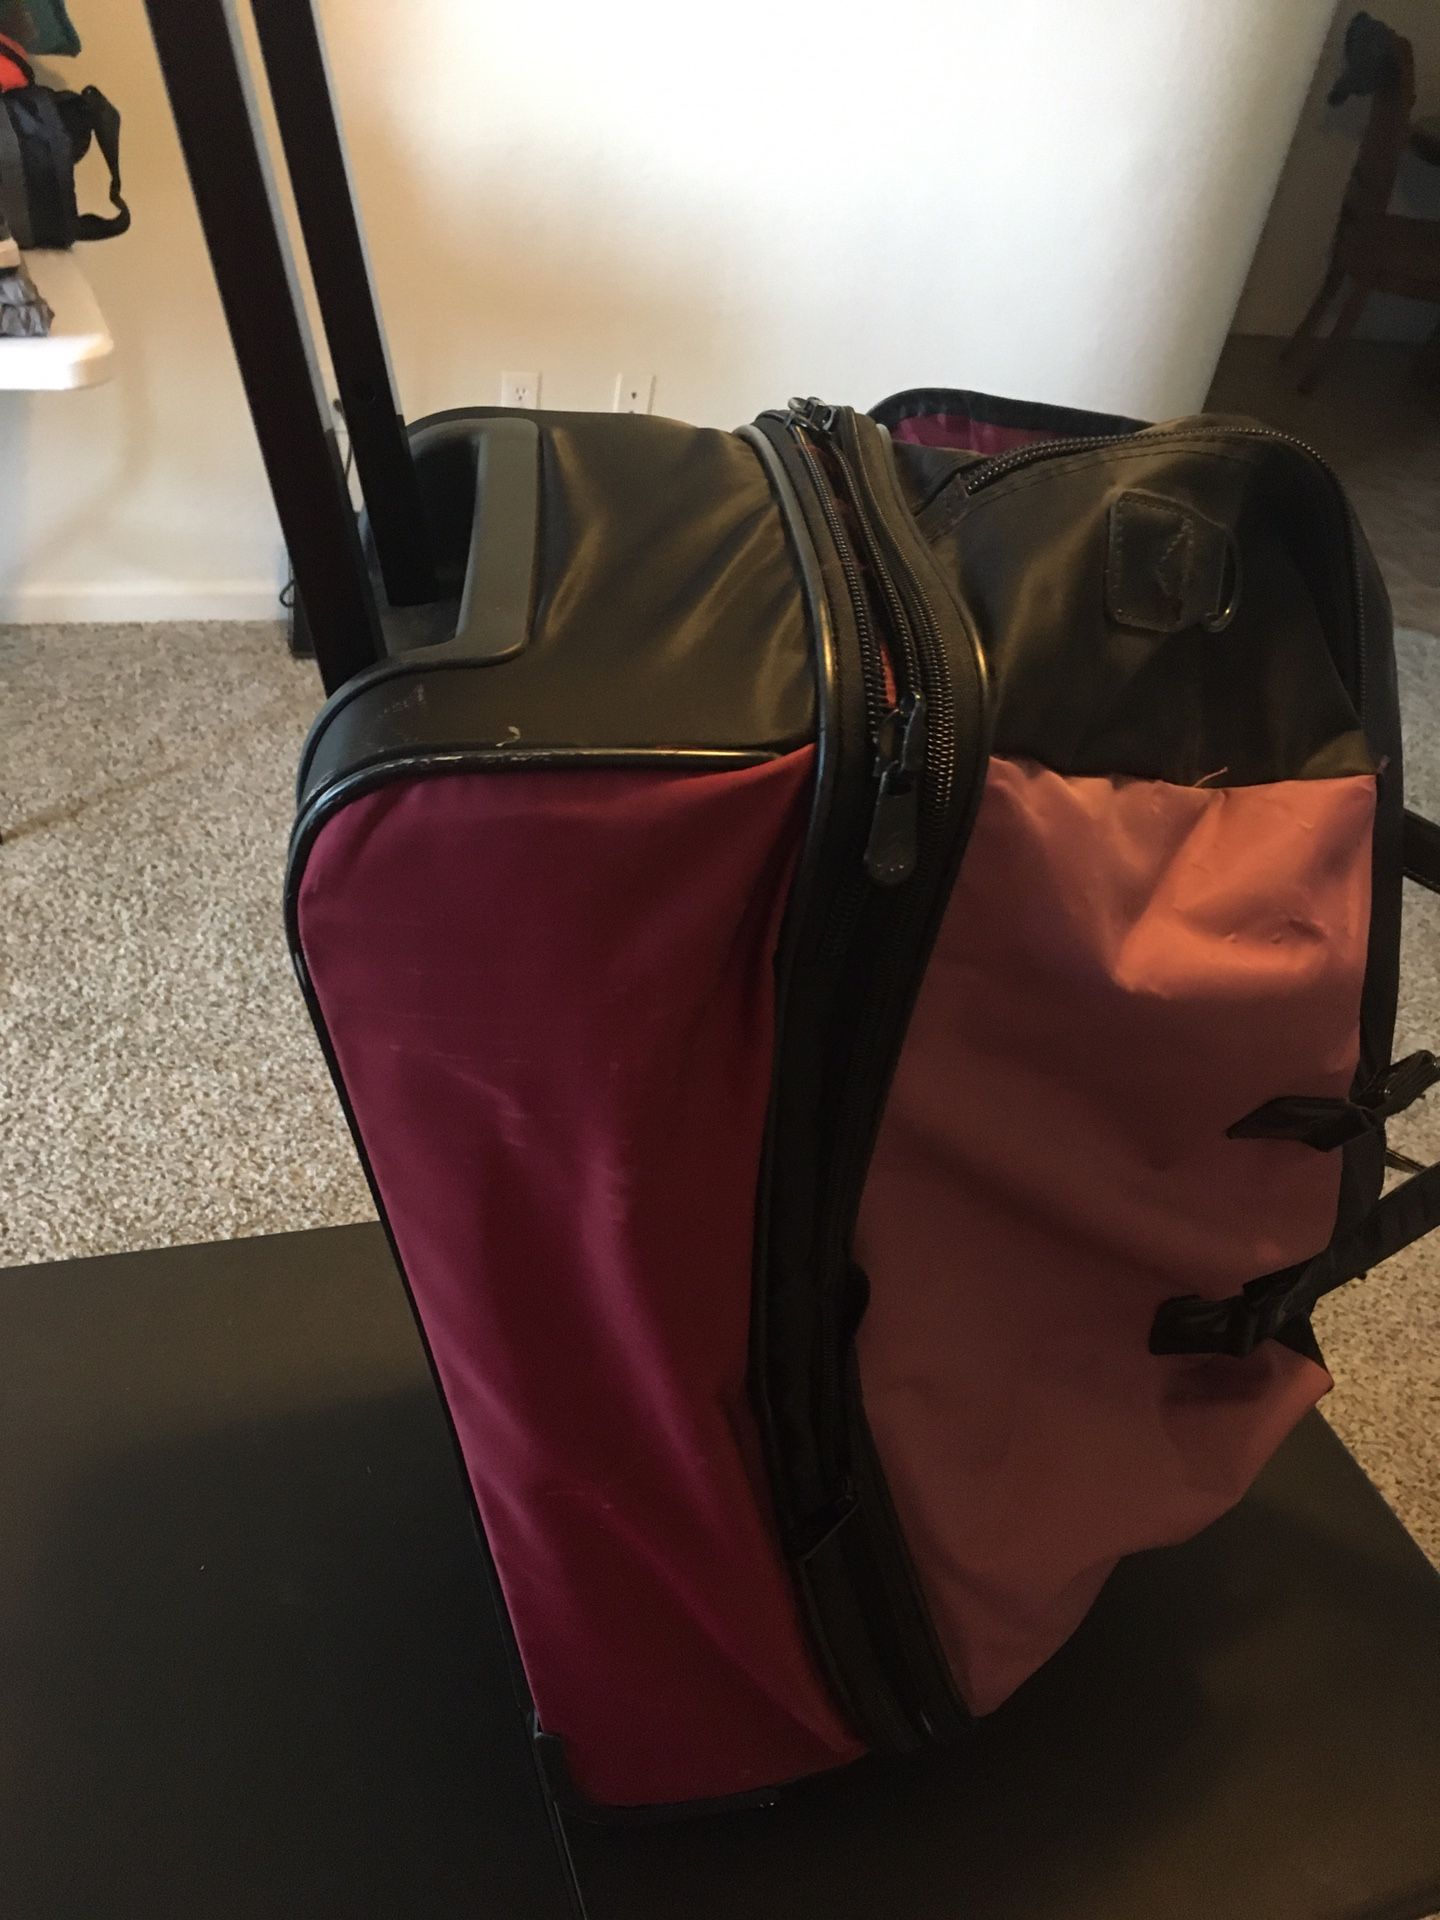 Travel bag. JM New York brand